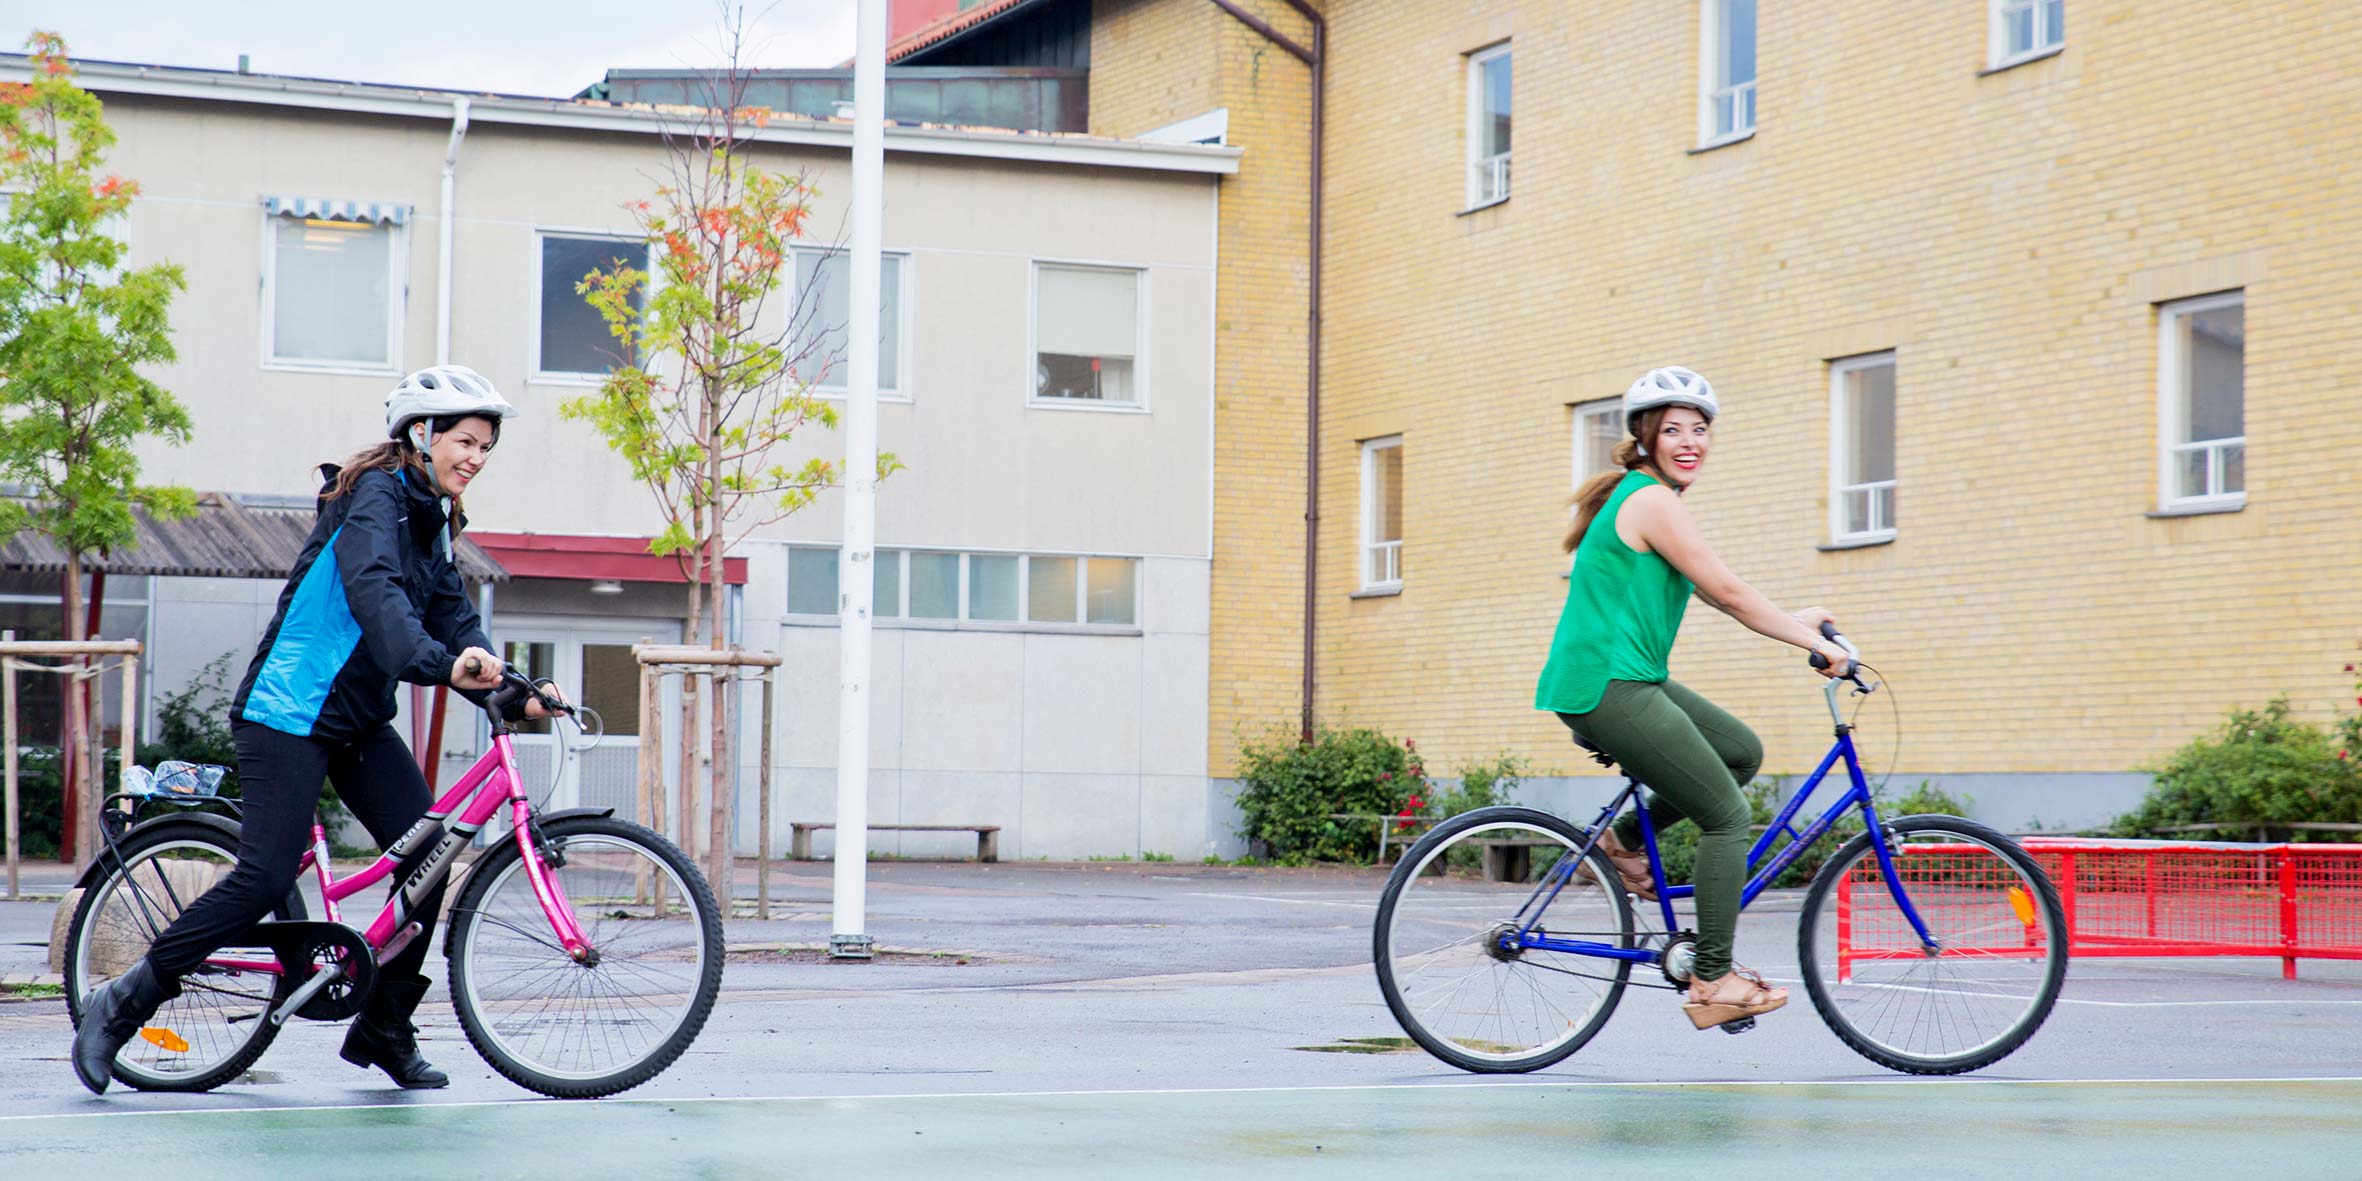 Två kvinnor som cyklar utanför en gul byggnad